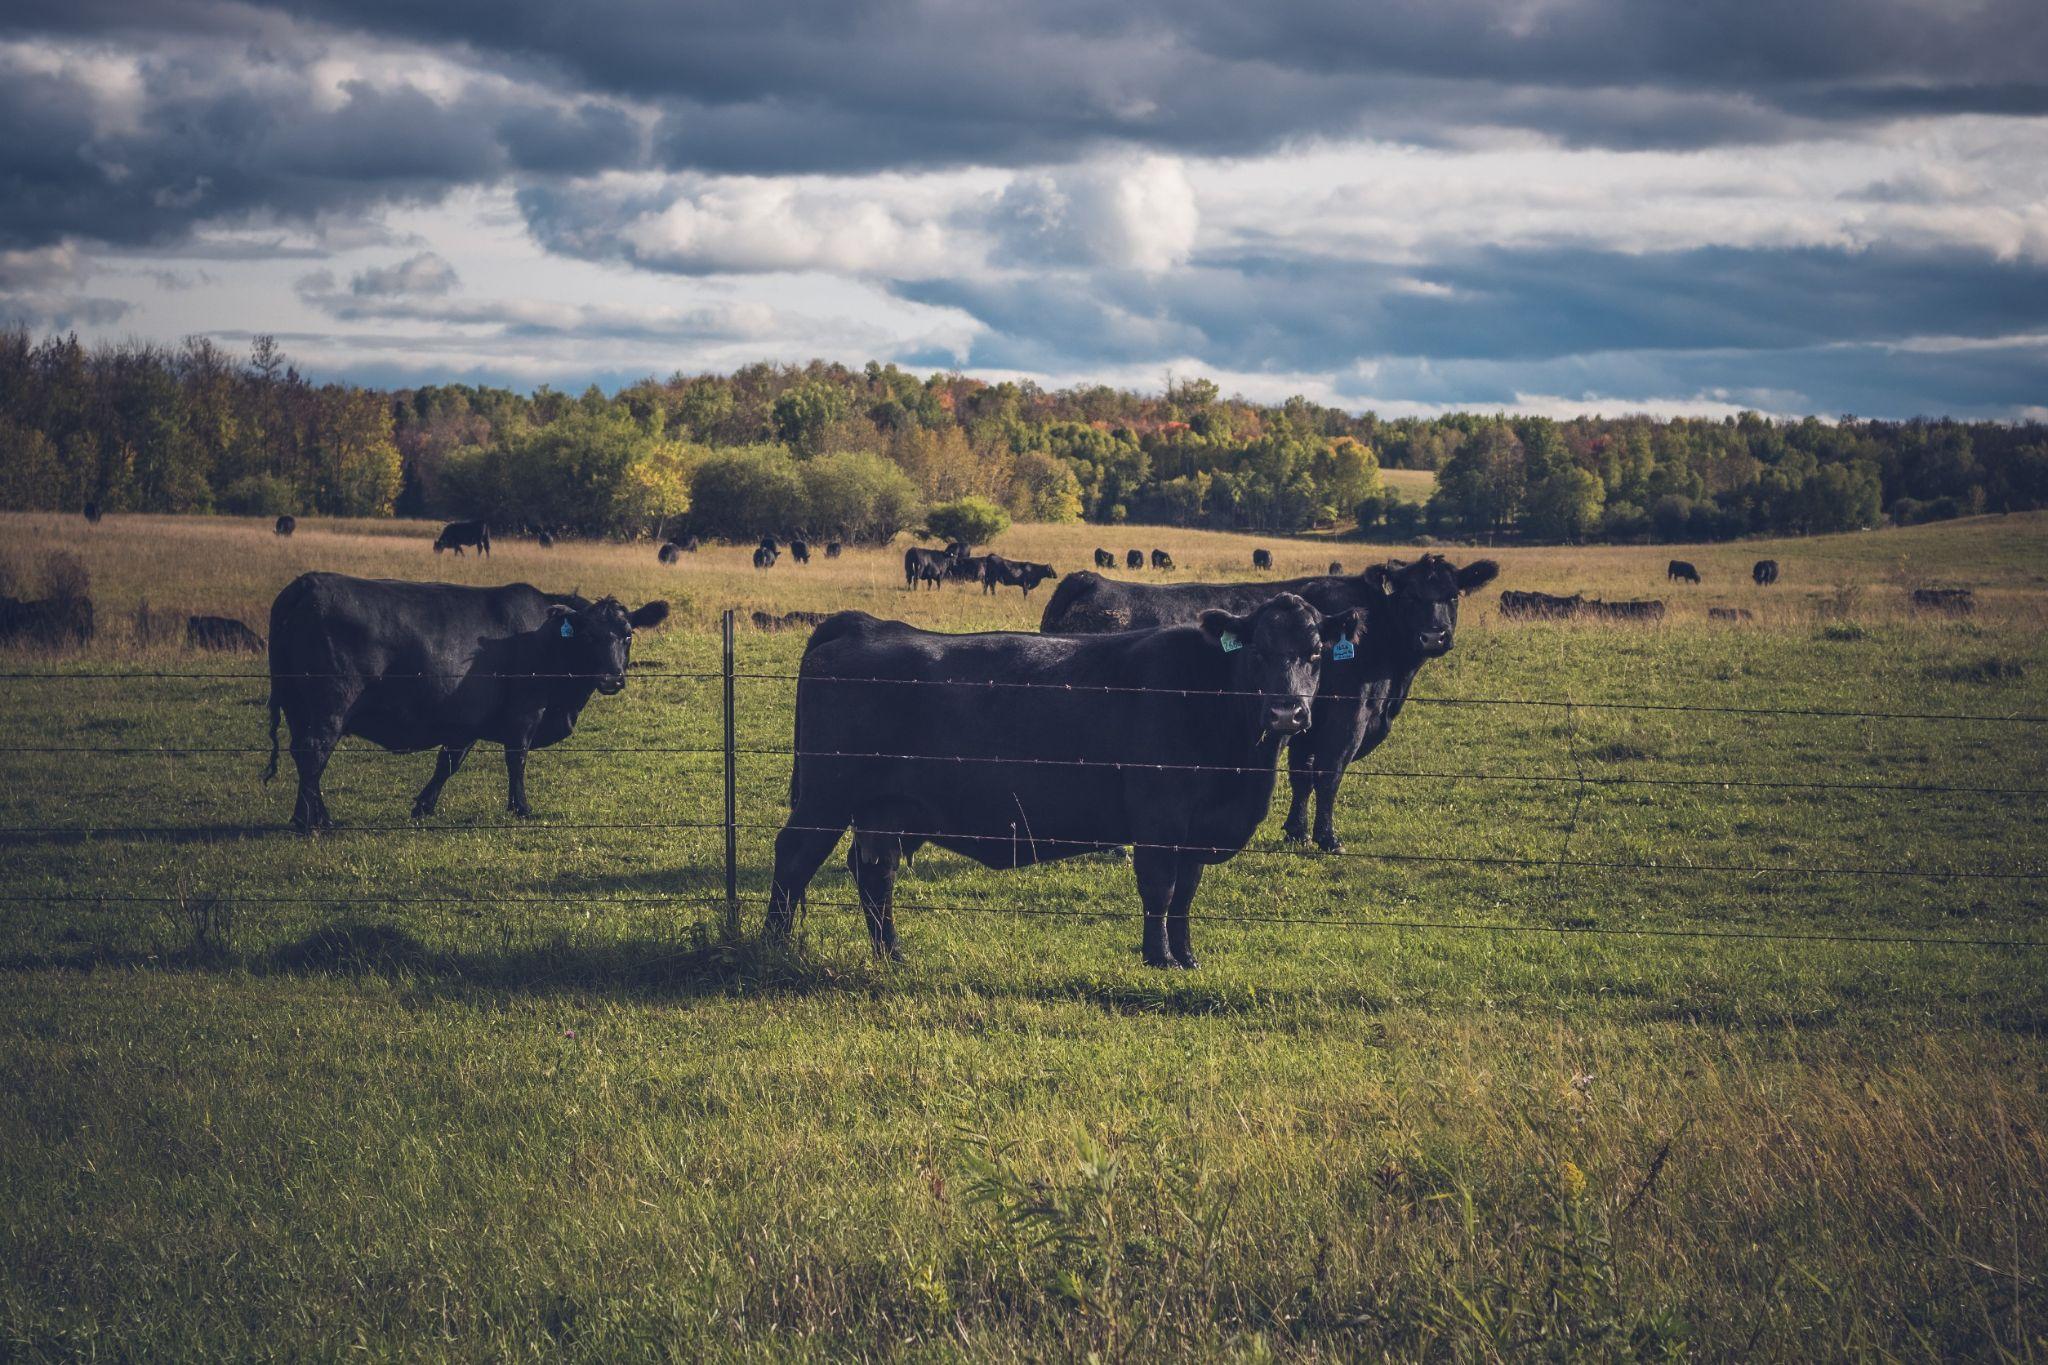 Beef cattle graze on a field in the summer.